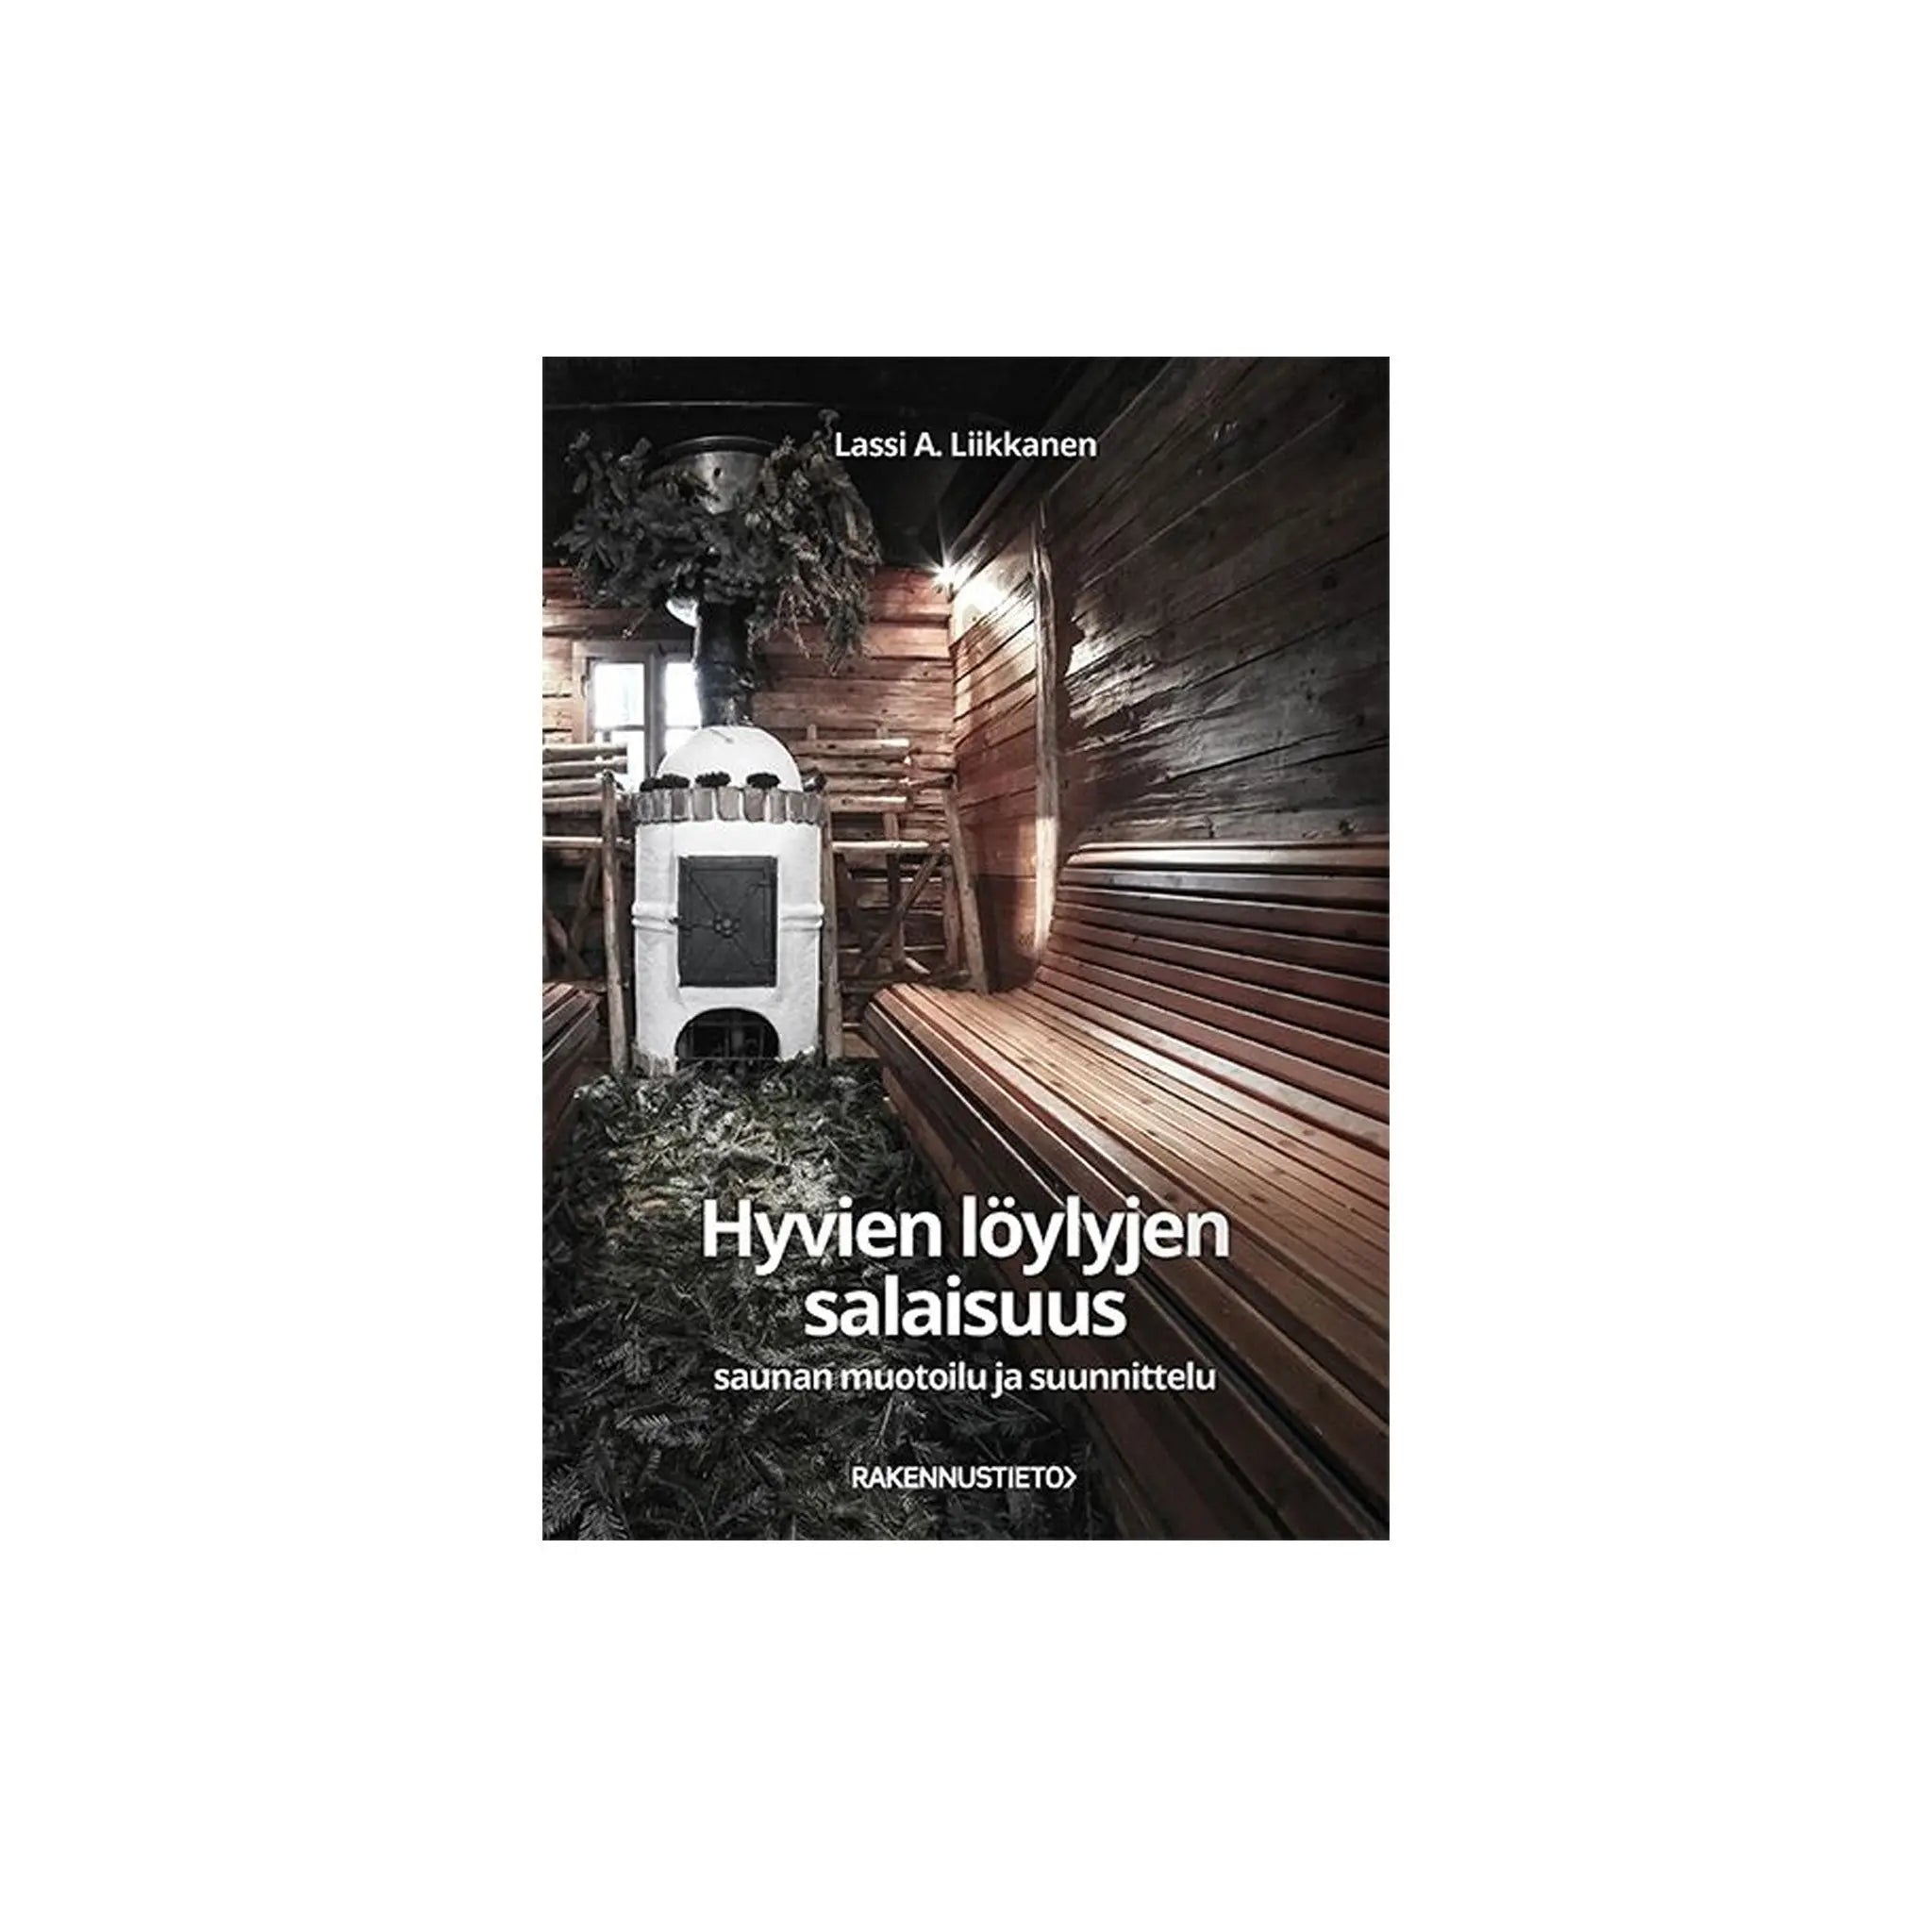 Hyvien löylyjen salaisuus | Lassi A. Liikkanen - Book Book | Finnmark Sauna